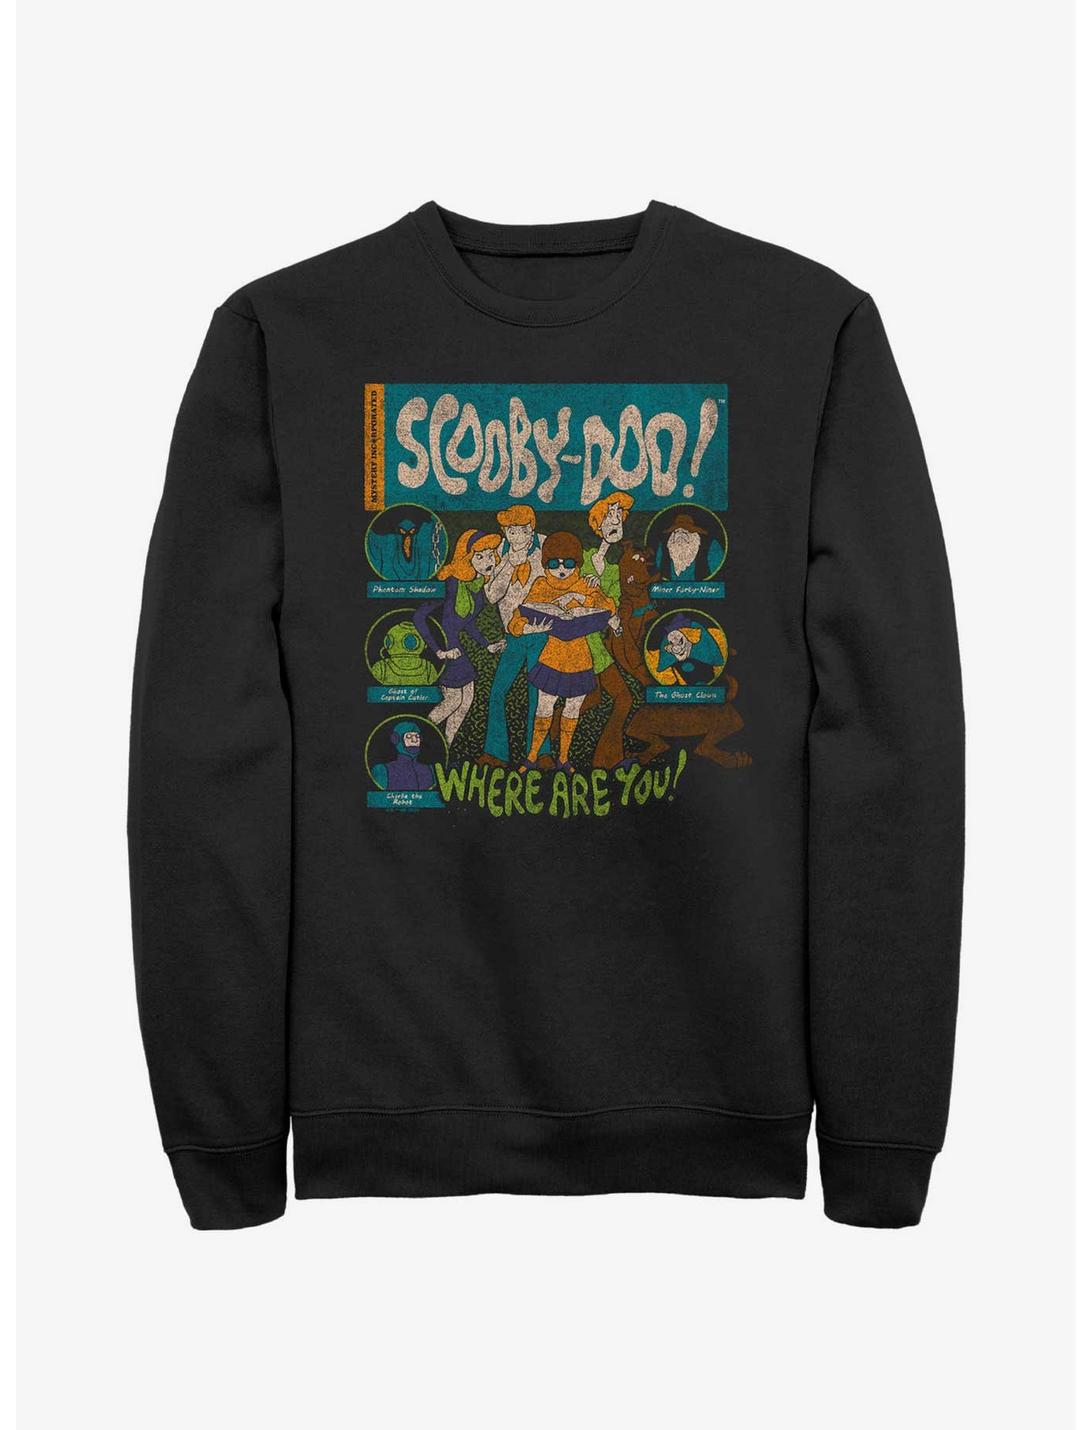 Scooby Doo Mystery Poster Sweatshirt, BLACK, hi-res